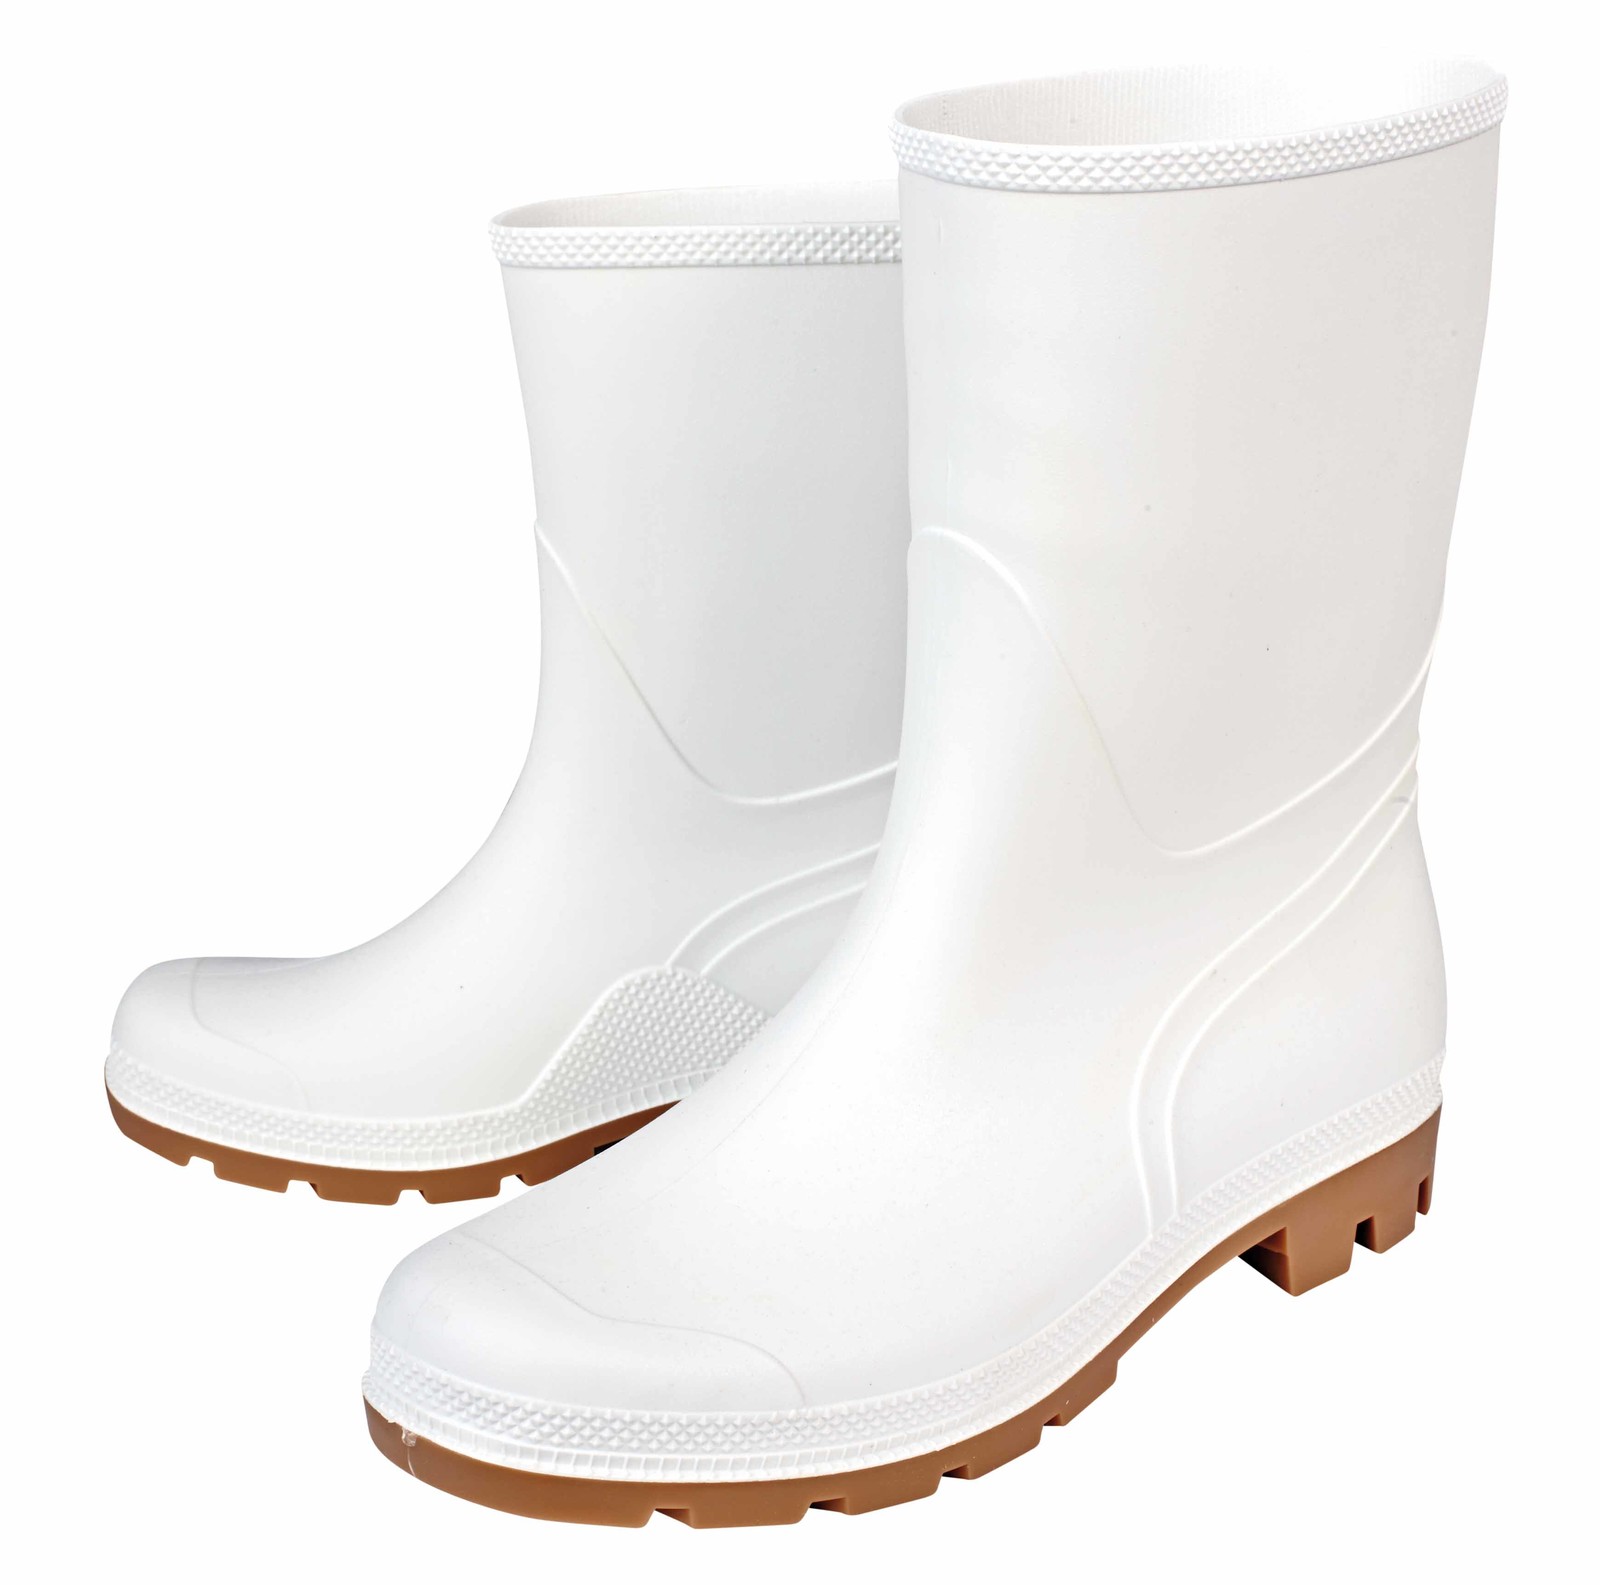 Gumáky Boots Troncheto PVC nízke - veľkosť: 40, farba: biela